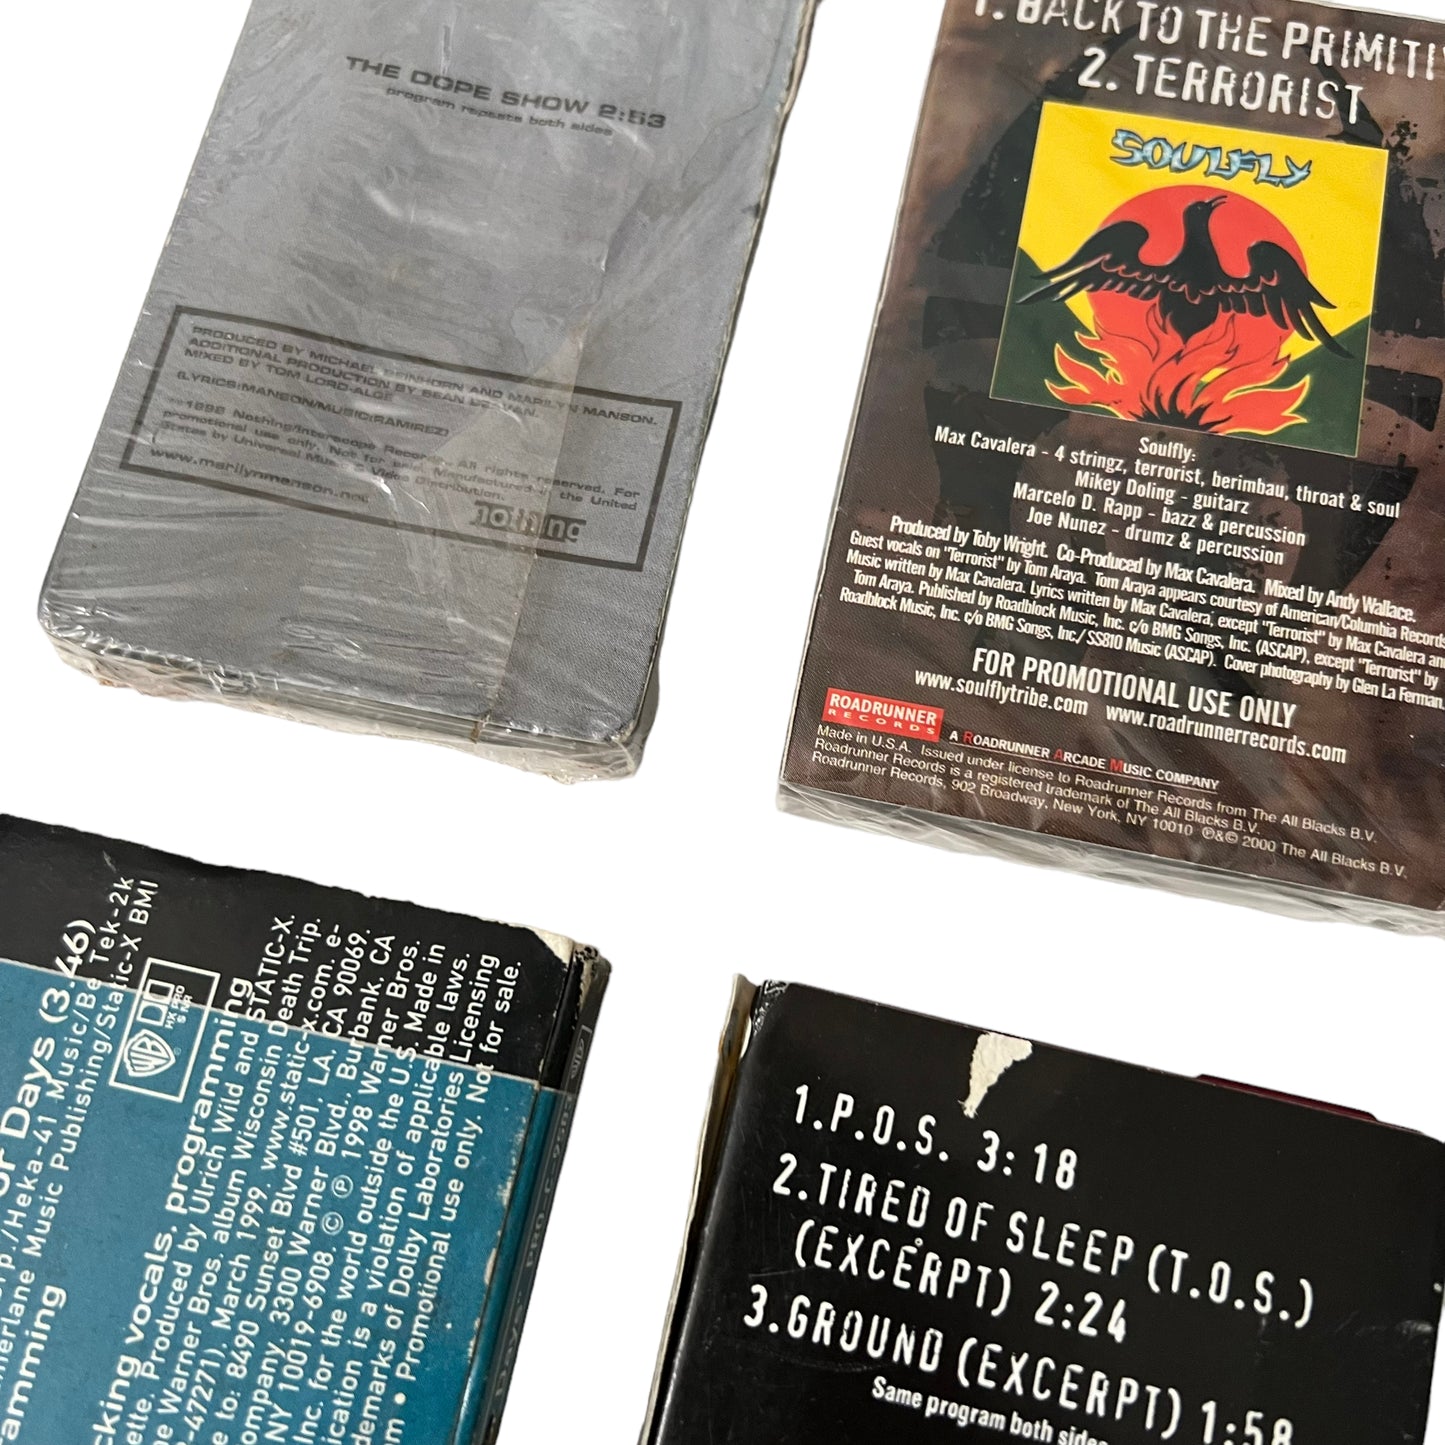 Bundle of 6 Rock Cassette Tape Samplers